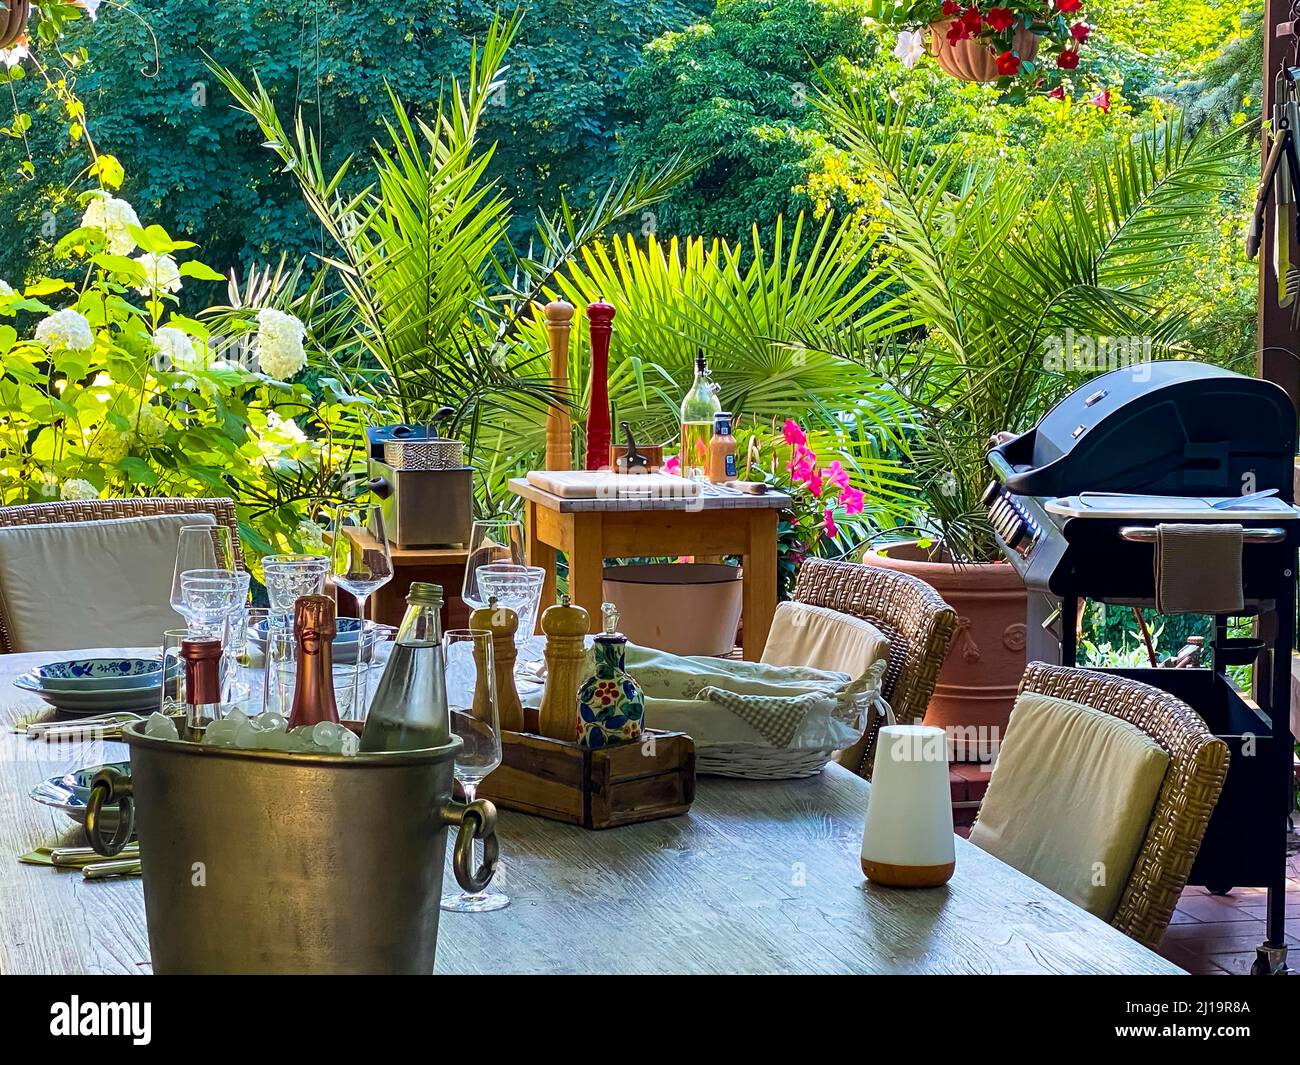 Jardin tropical avec table avec barbecue Moulin à sel et poivre avec huile et épices Banque D'Images